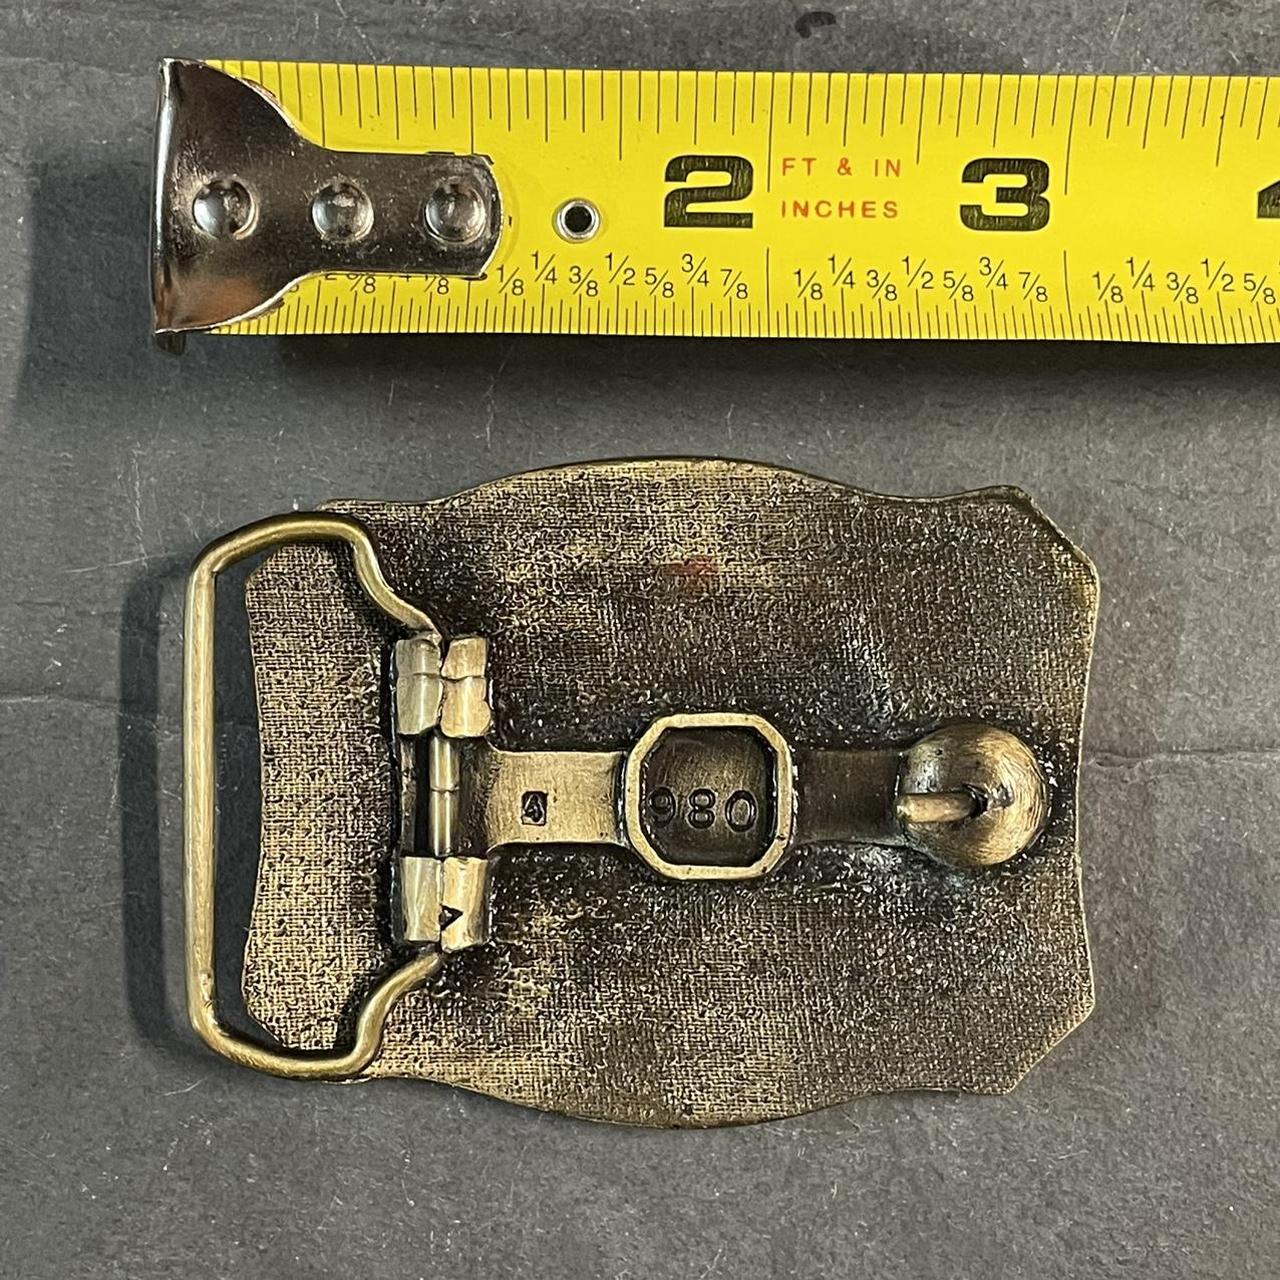 Vintage fish belt buckle. This vintage brass belt